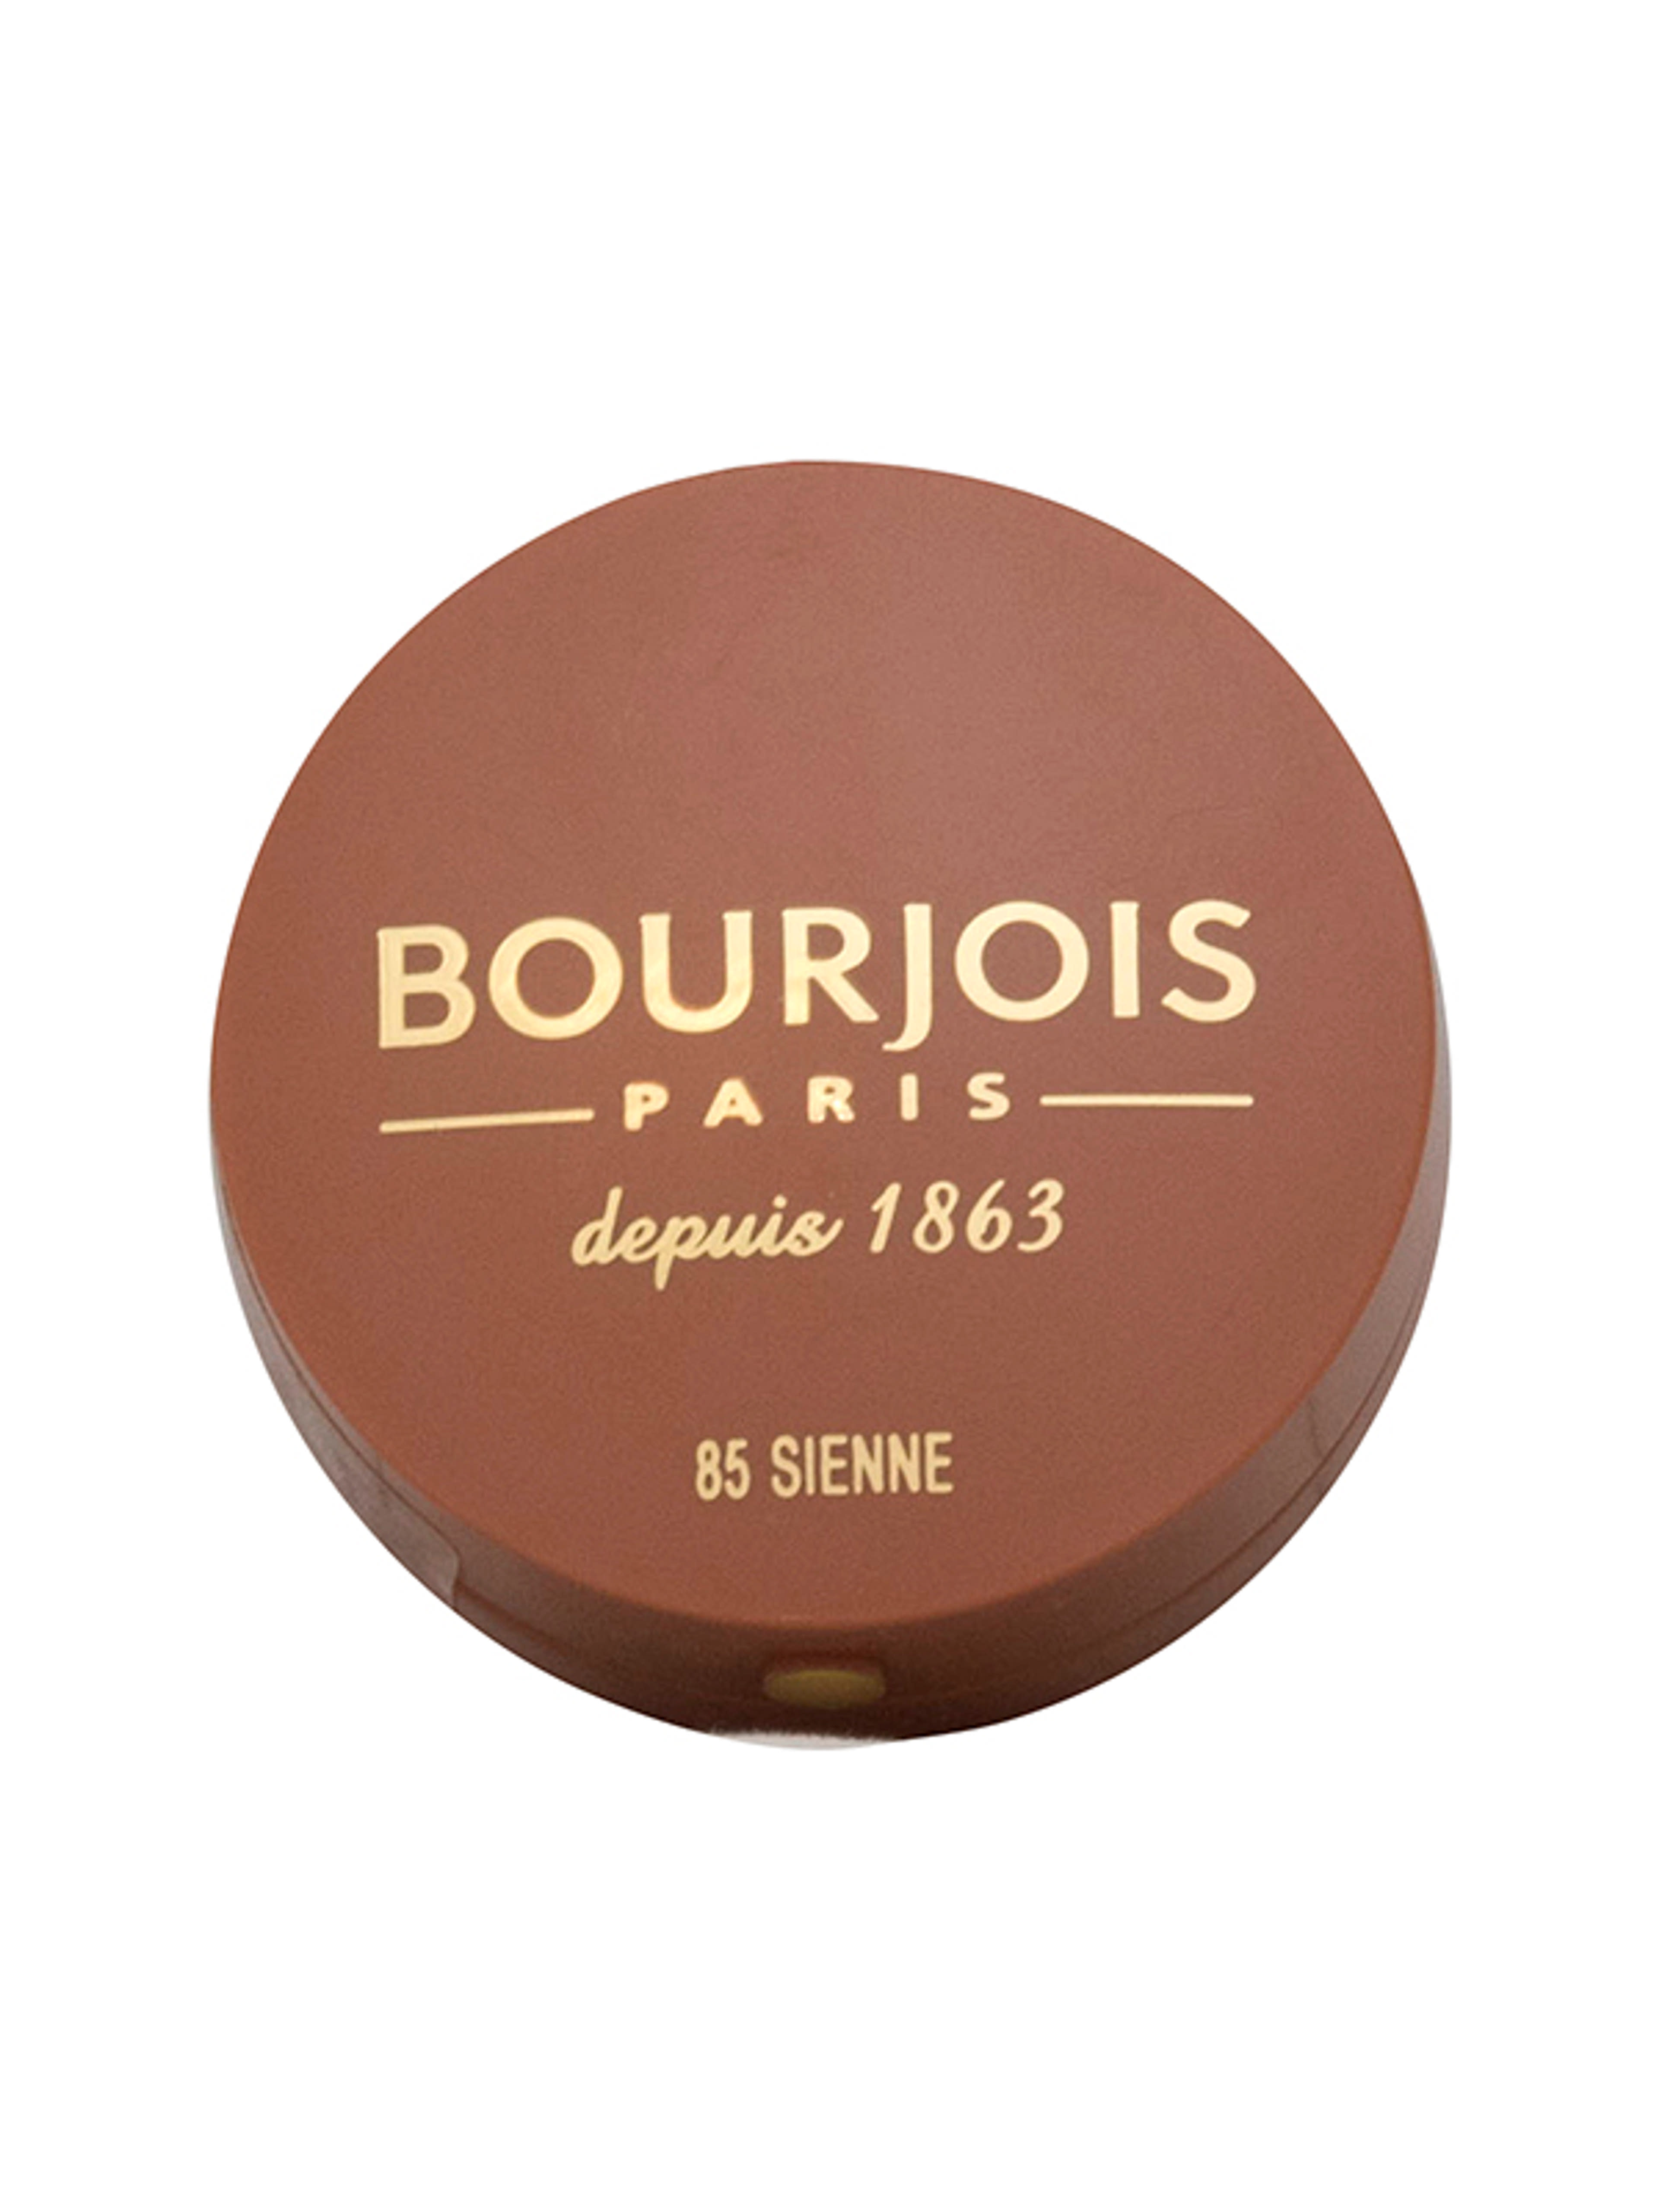 Bourjois pirosító little round pot /85 - 1 db-1